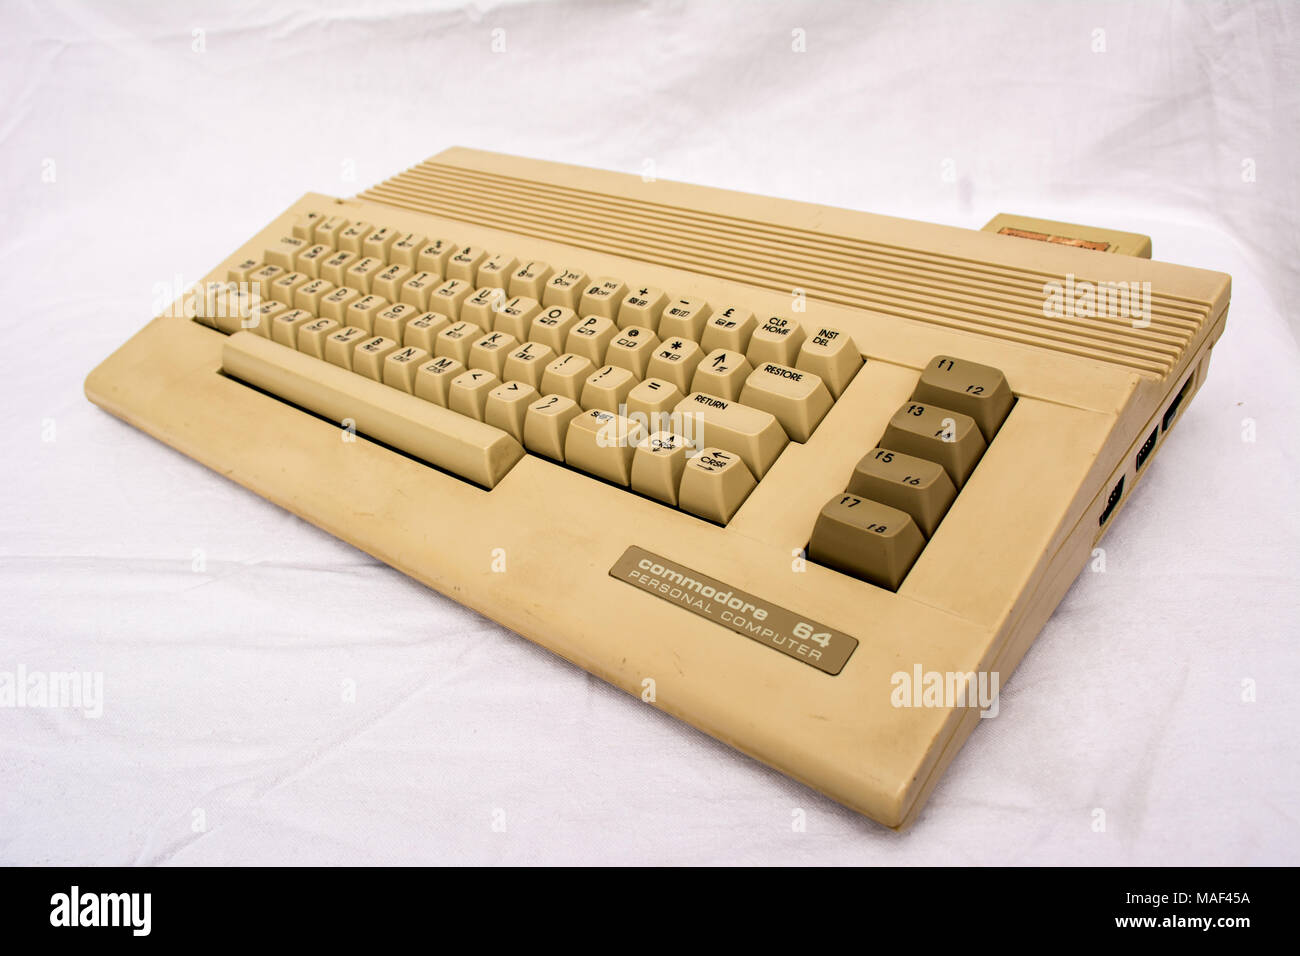 Commodore 64 Stock Photo